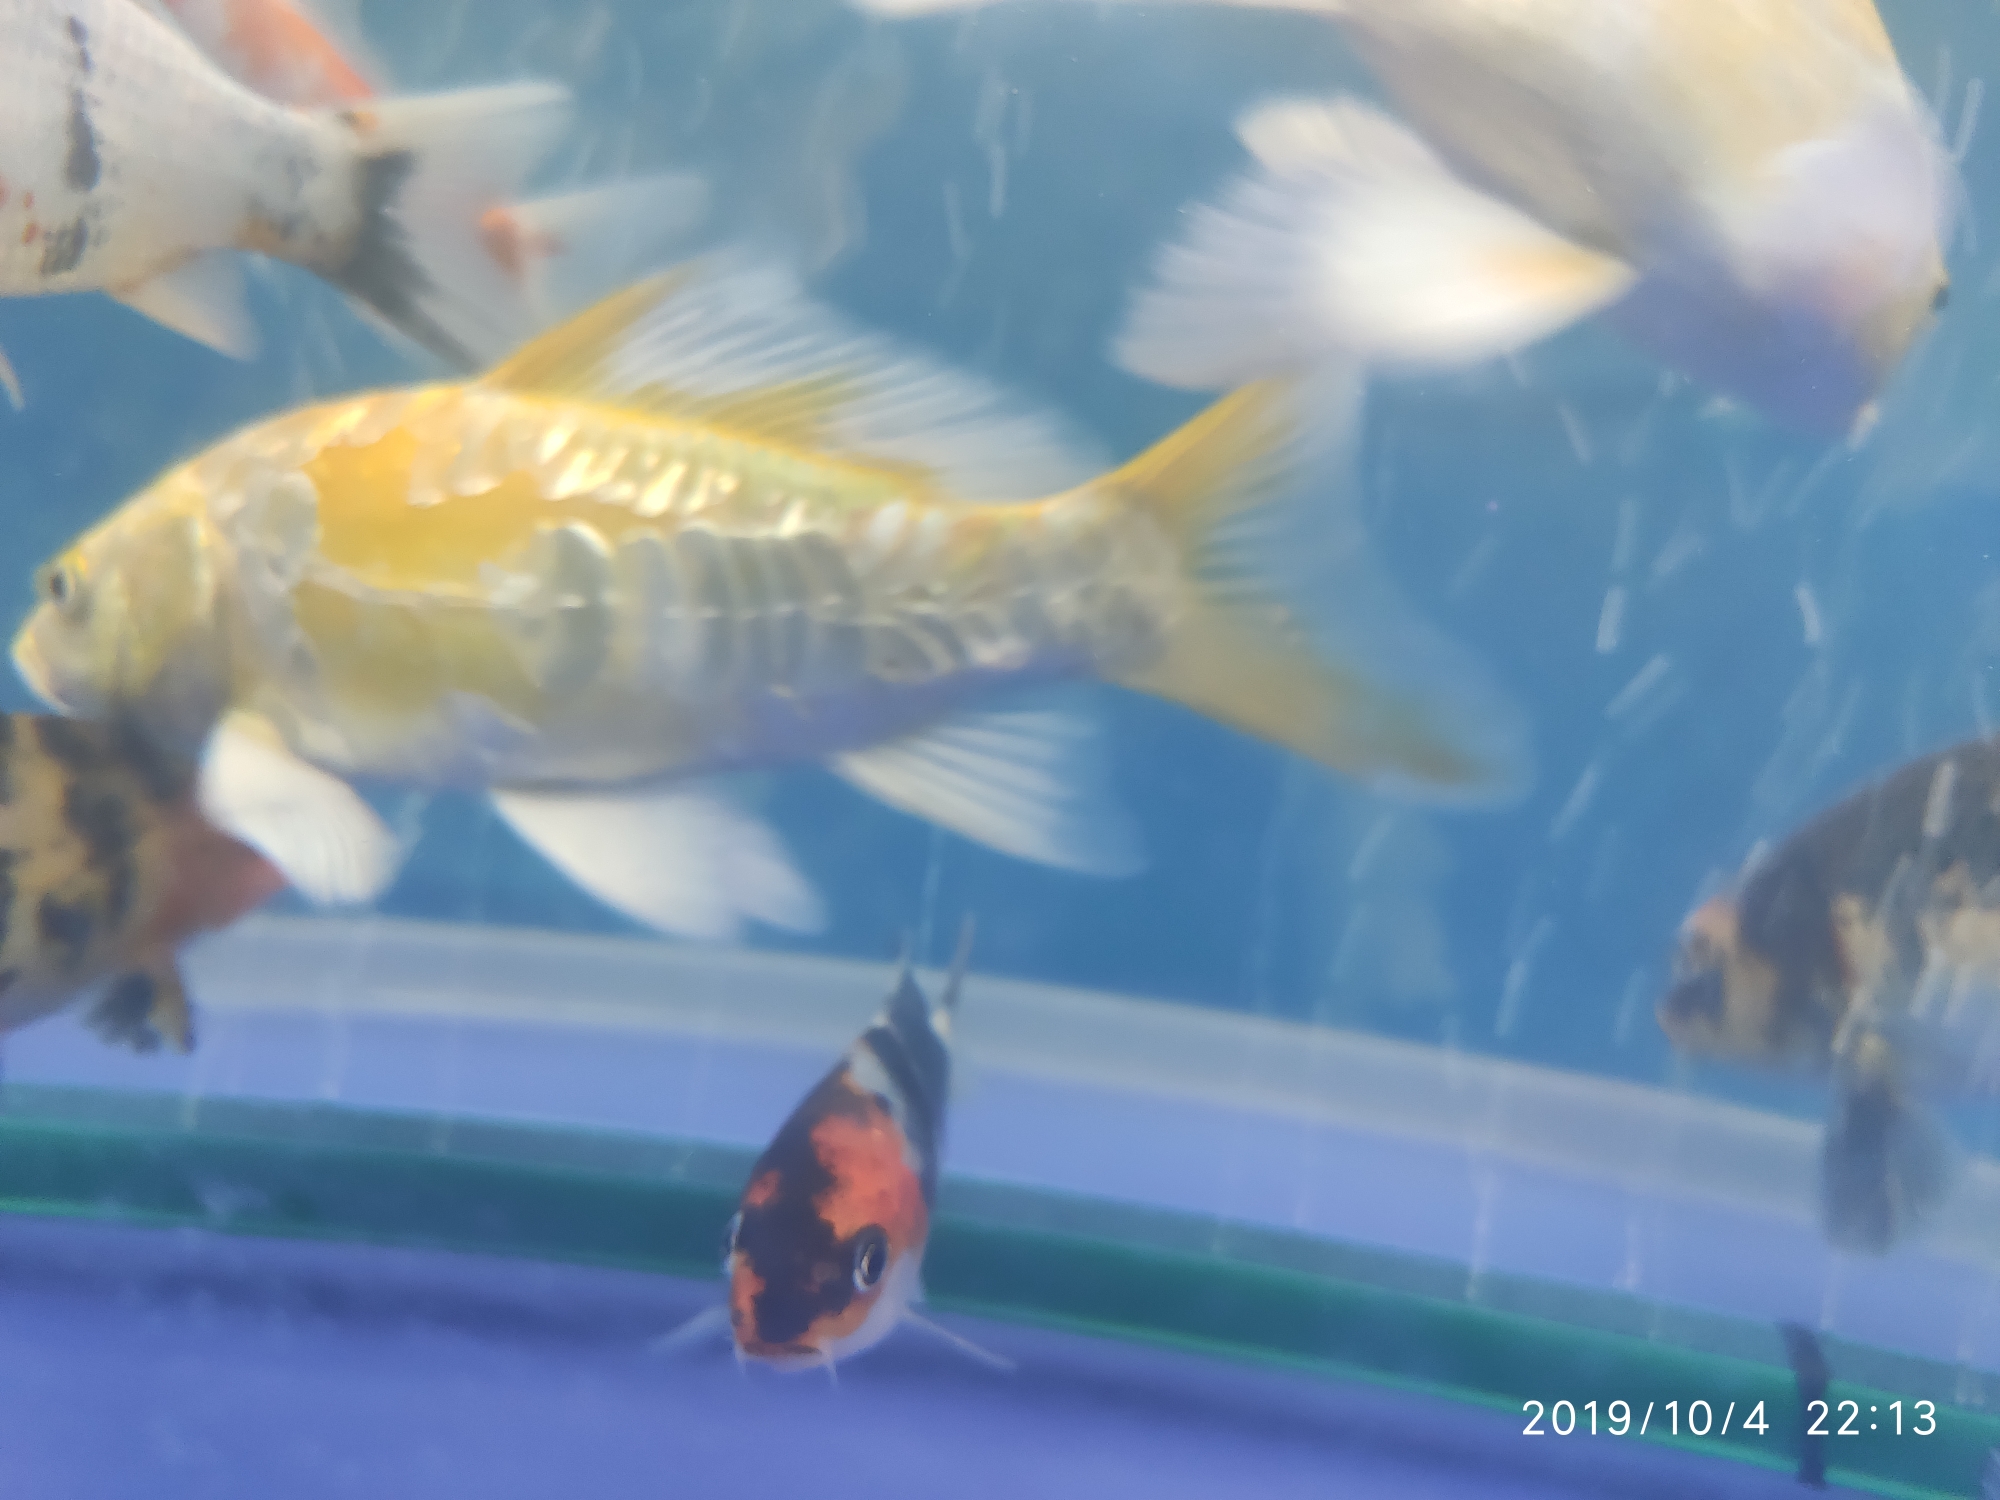 Ashkenazi yellow body caudal fin with a small hole bubble Pikonni fish ASIAN AROWANA,AROWANA,STINGRAY The3sheet